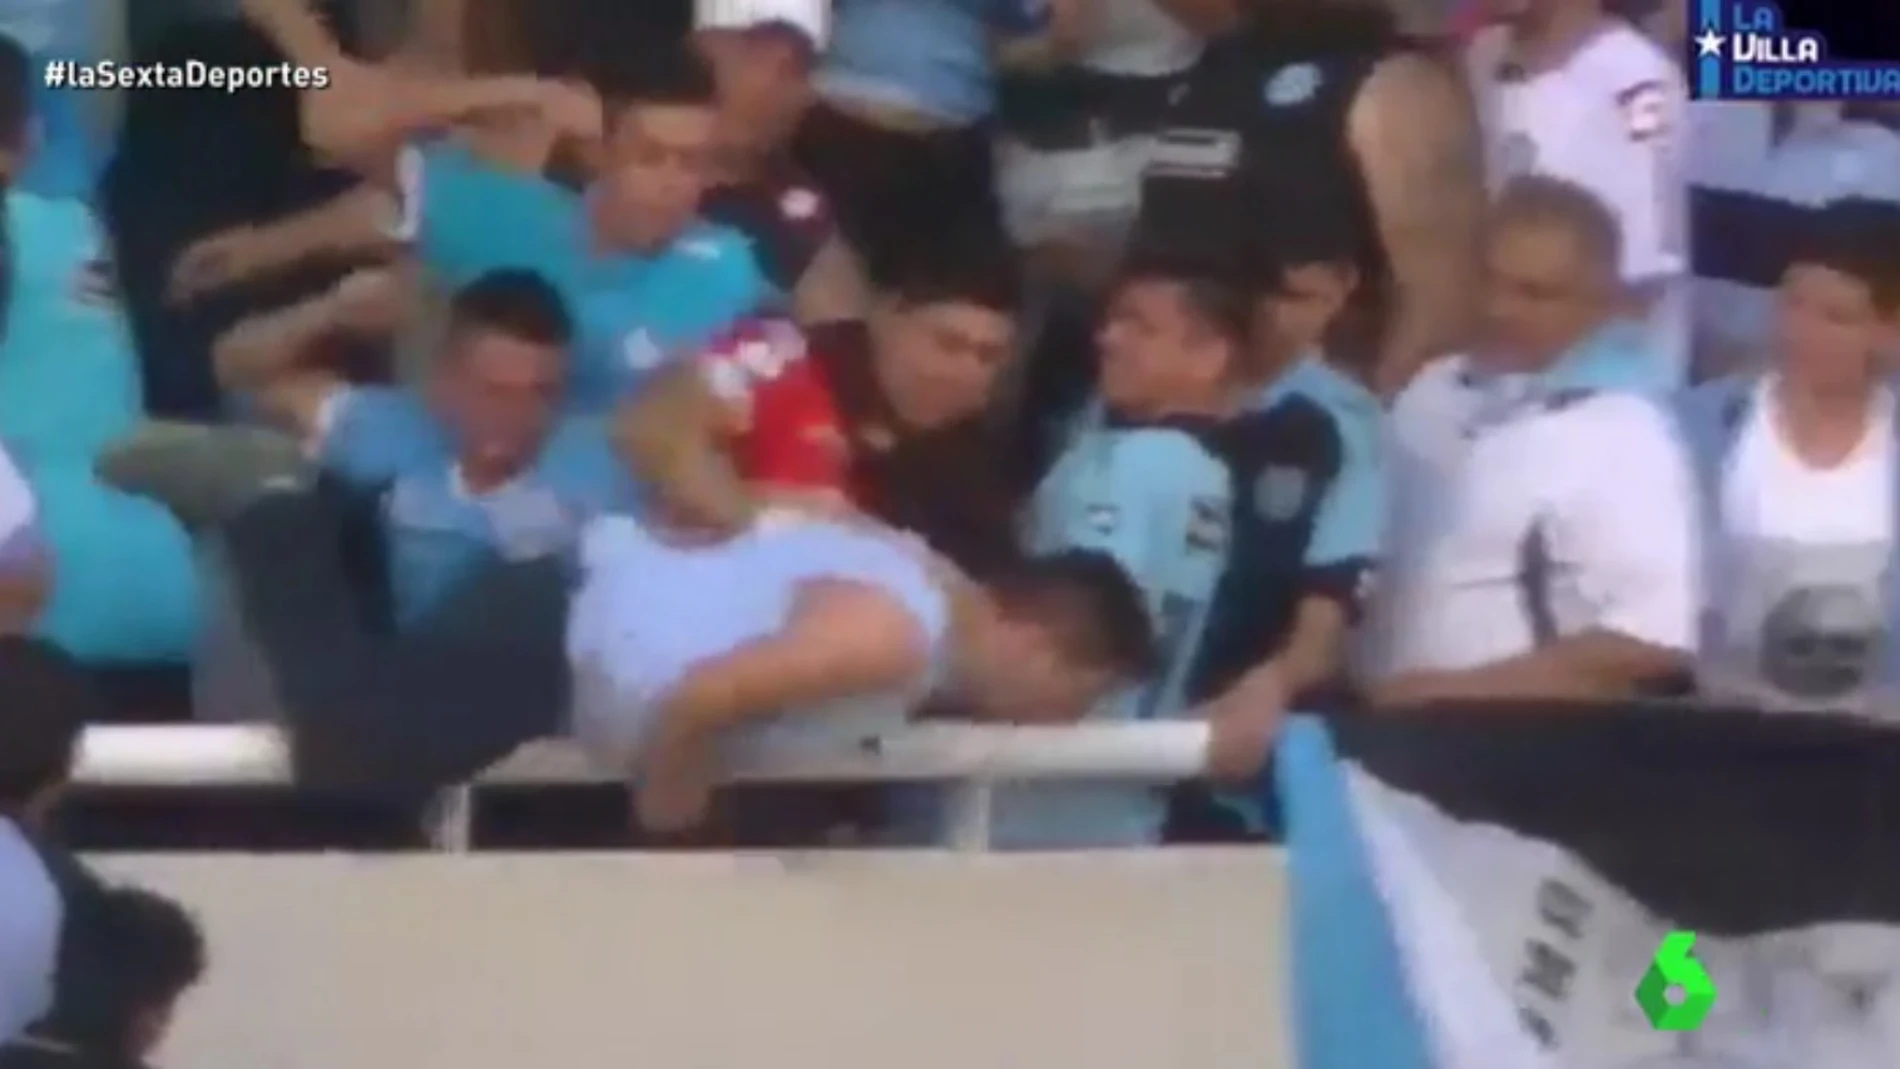 Las duras imágenes del momento en el que los ultras de Belgrano arrojaron al aficionado Emanuel Balbo al vacío